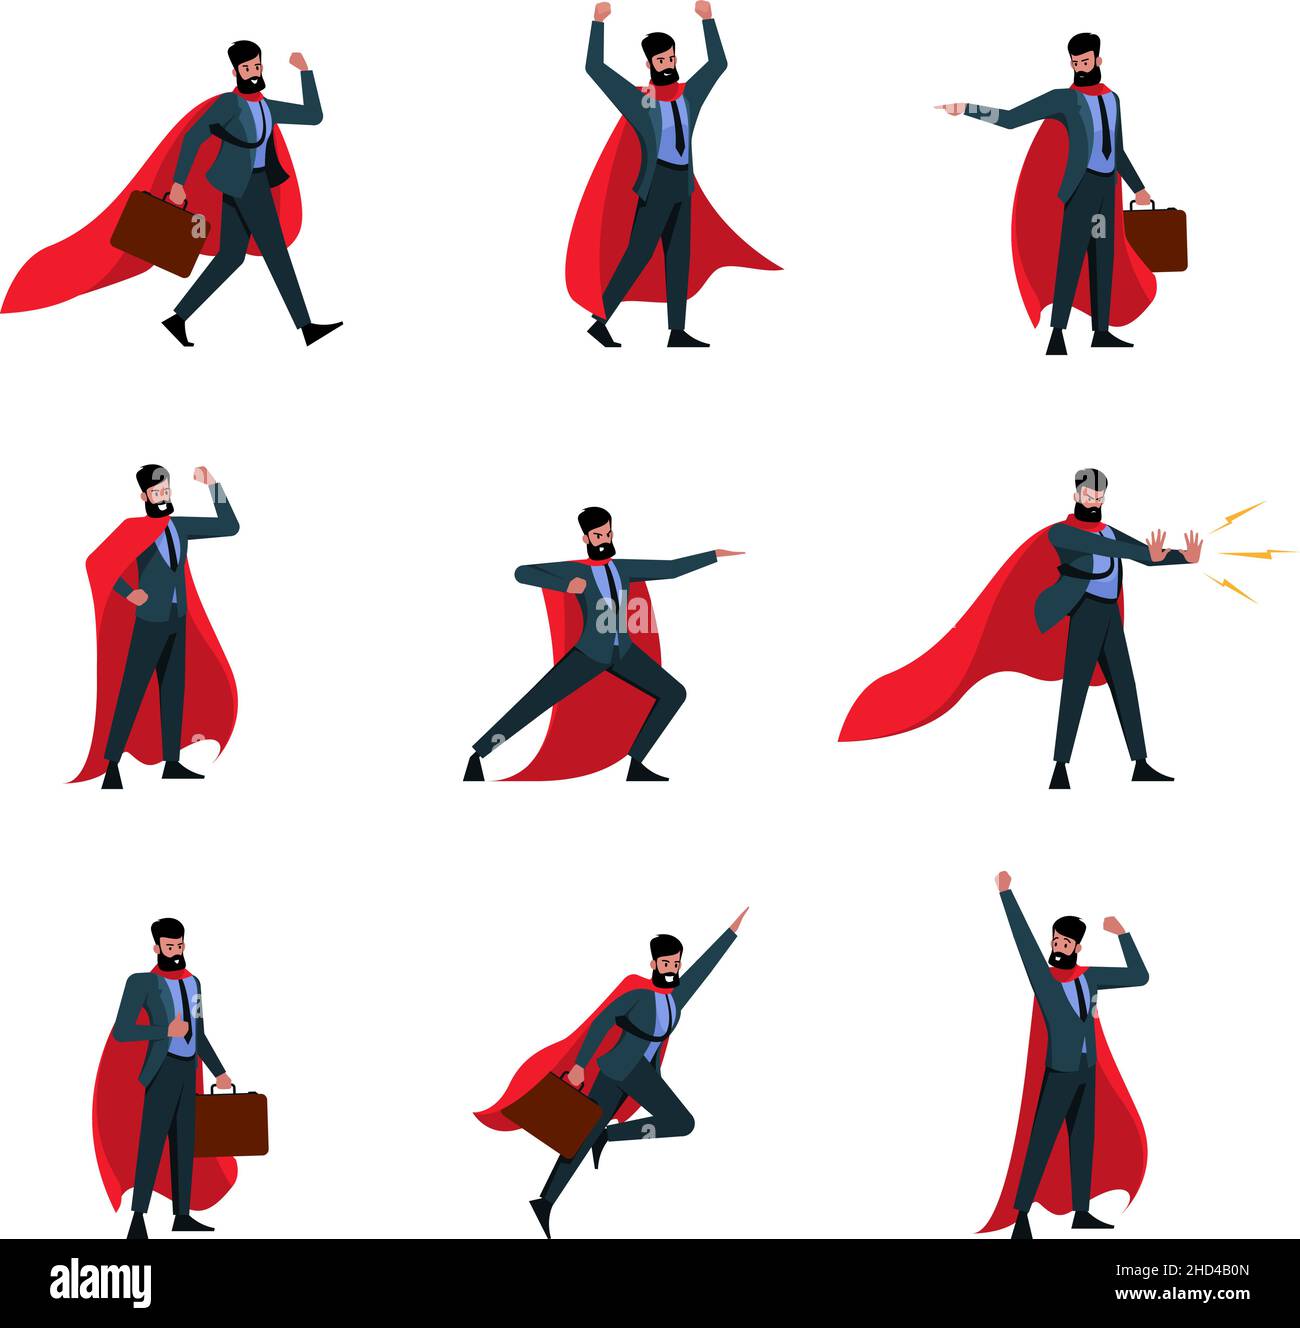 Héroes de negocios. Hombre volador en rojo cabo de la acción de poder plantea de los personajes de hombre de negocios garish ilustraciones de vectores en estilo de dibujos animados aislado Ilustración del Vector